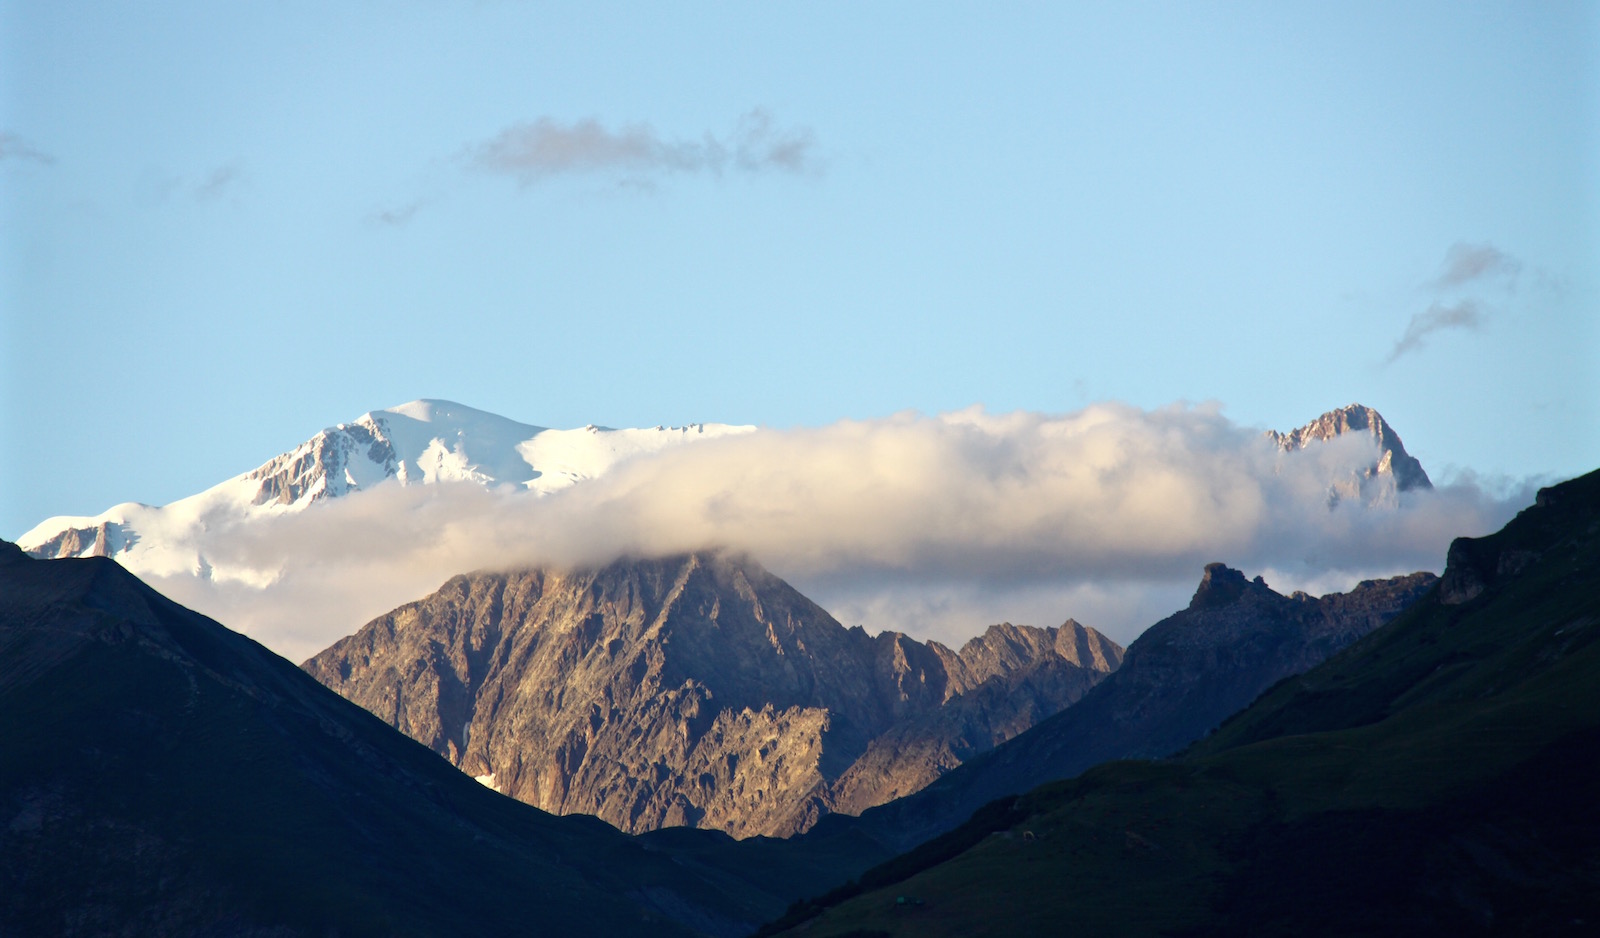 Stets erhaben und majestätisch - der Mont Blanc.